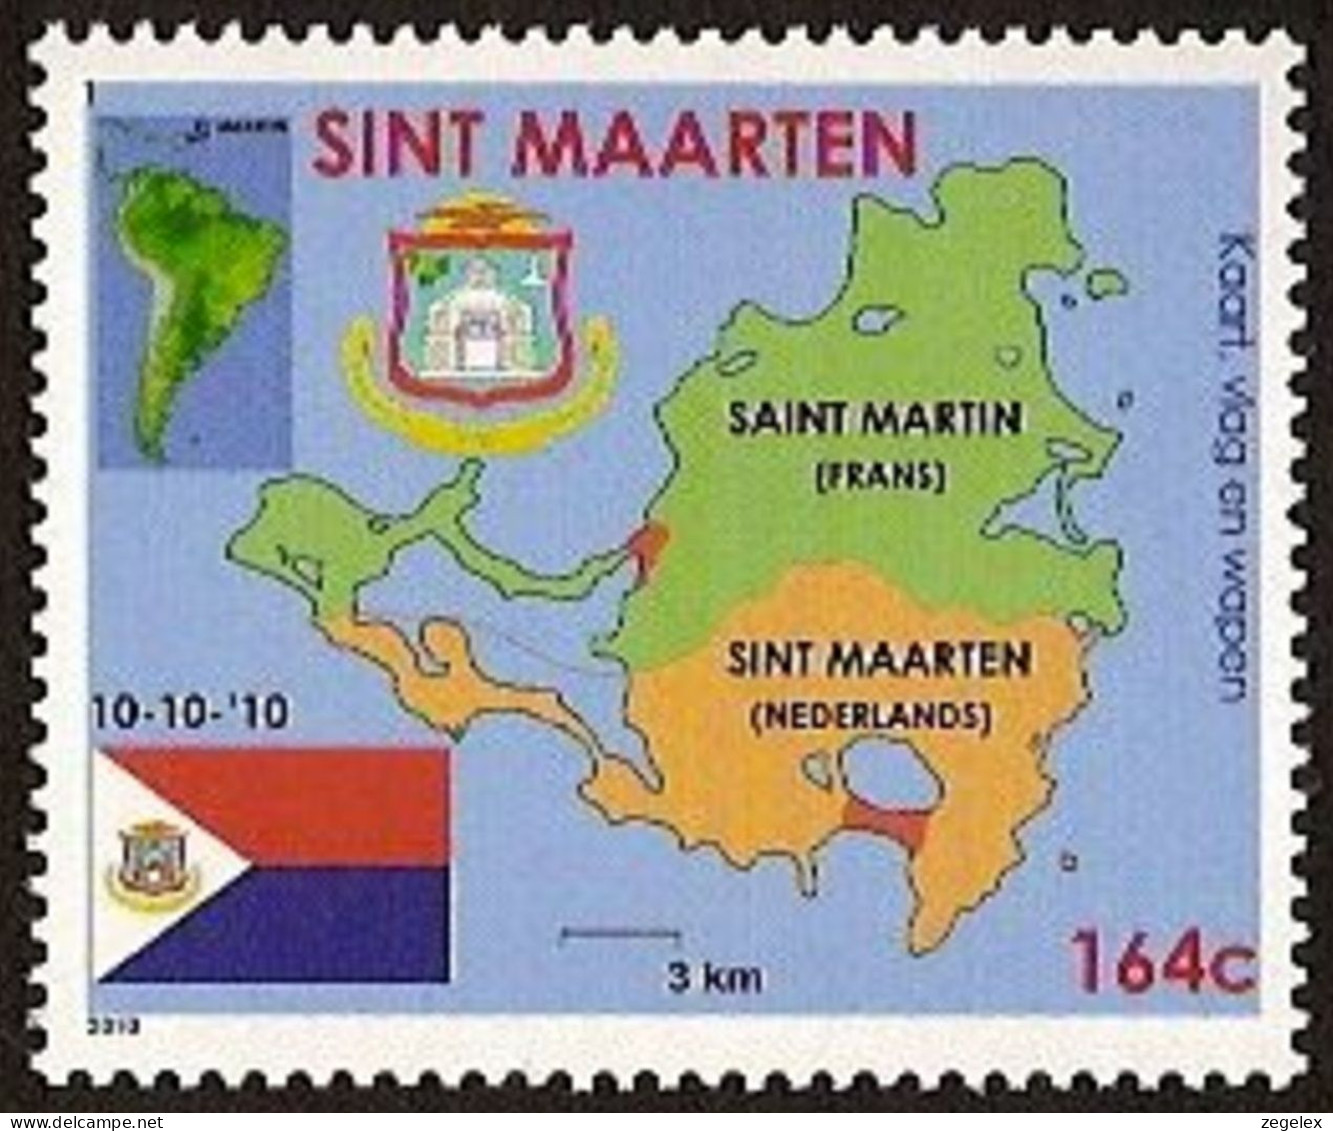 Sint Maarten 2010 Wapen, Vlag, Landkaart NVPH SM-001 MNH ** Postfrisch - Niederländische Antillen, Curaçao, Aruba